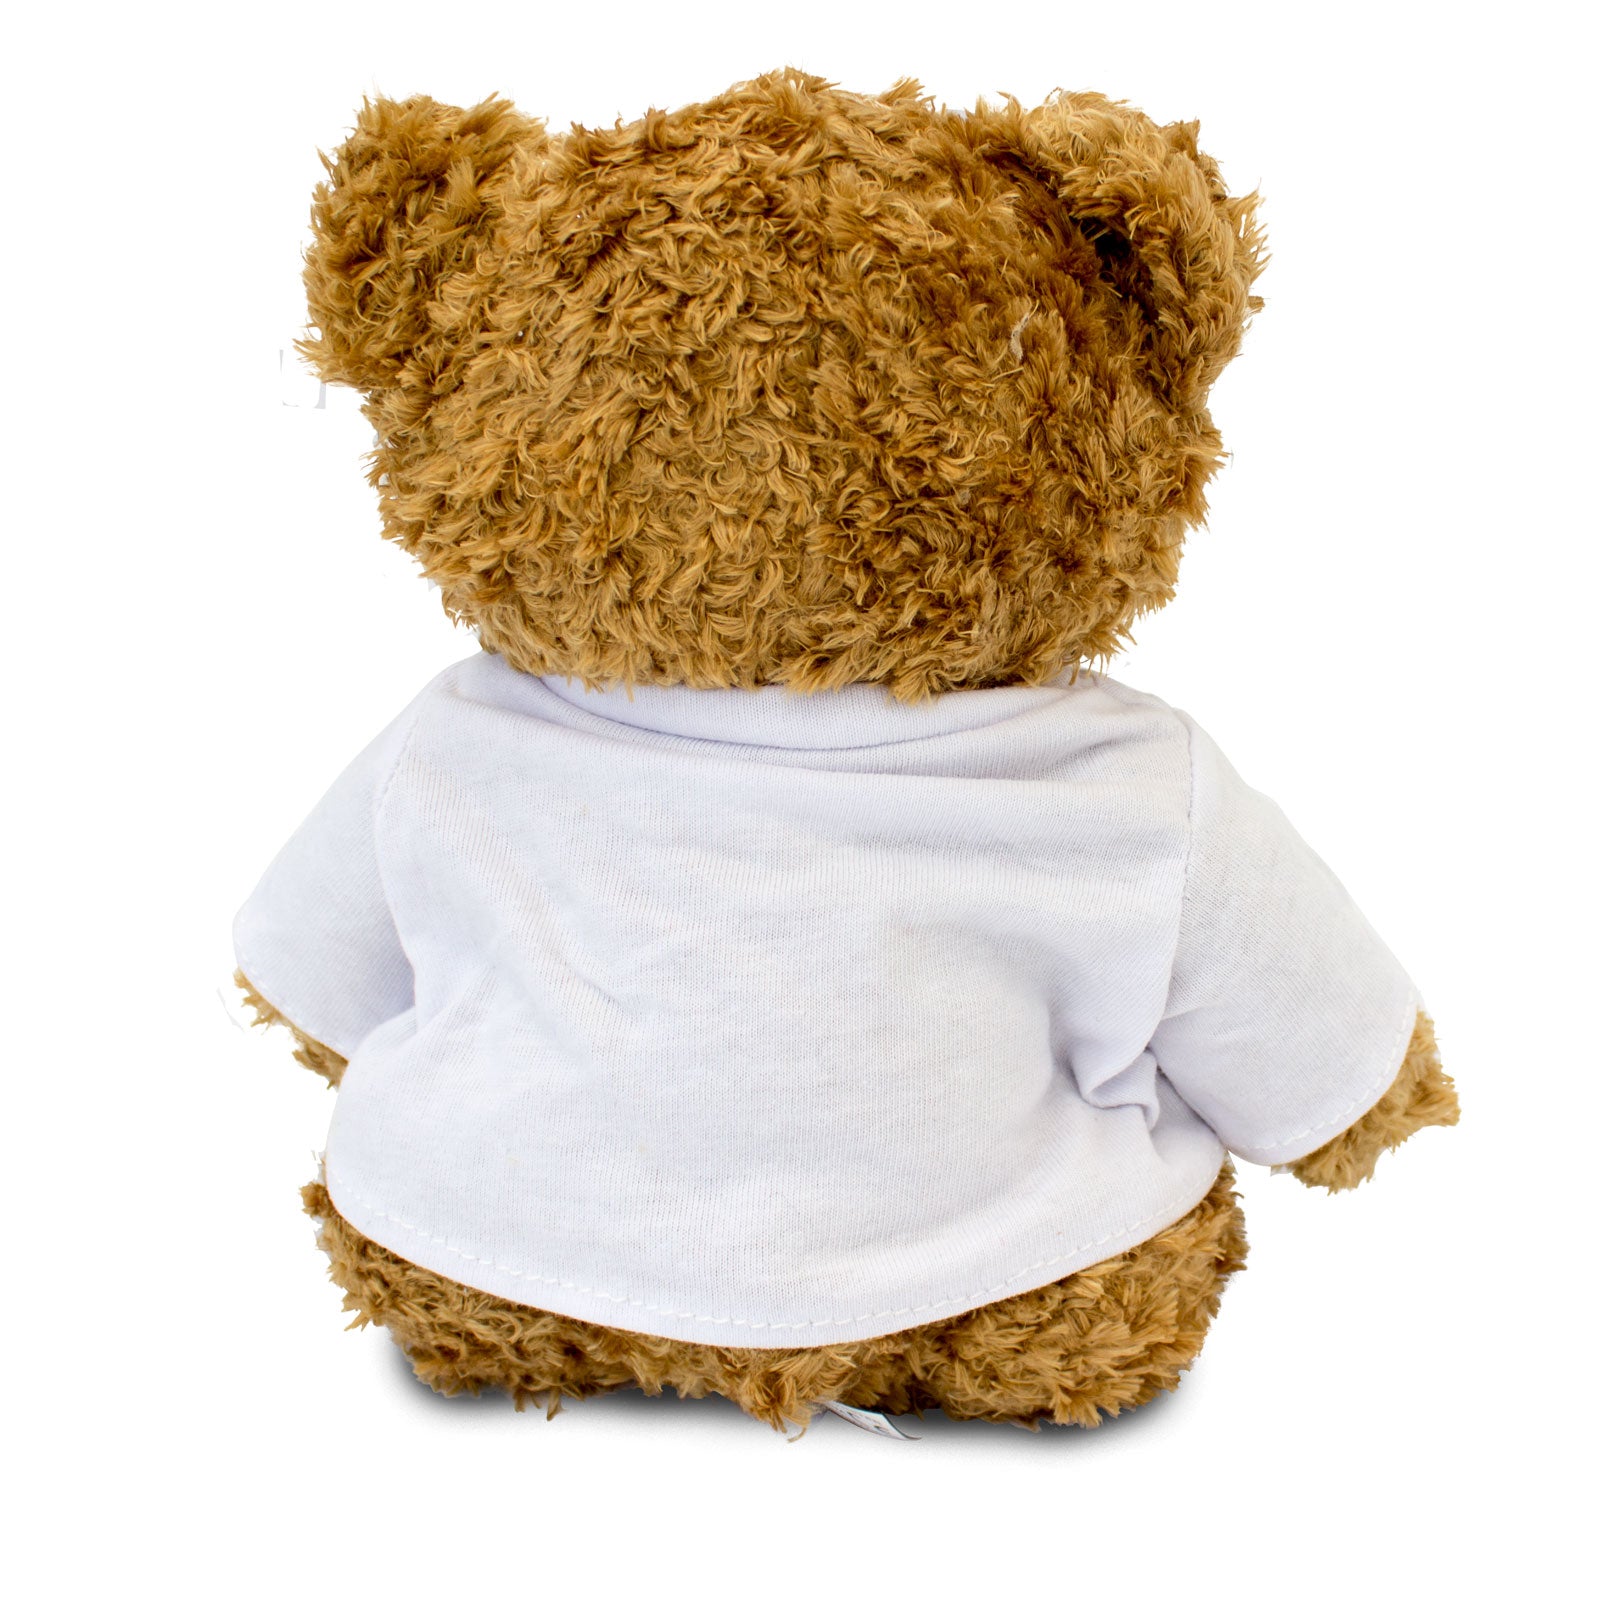 Get Well Soon Nanna - Teddy Bear